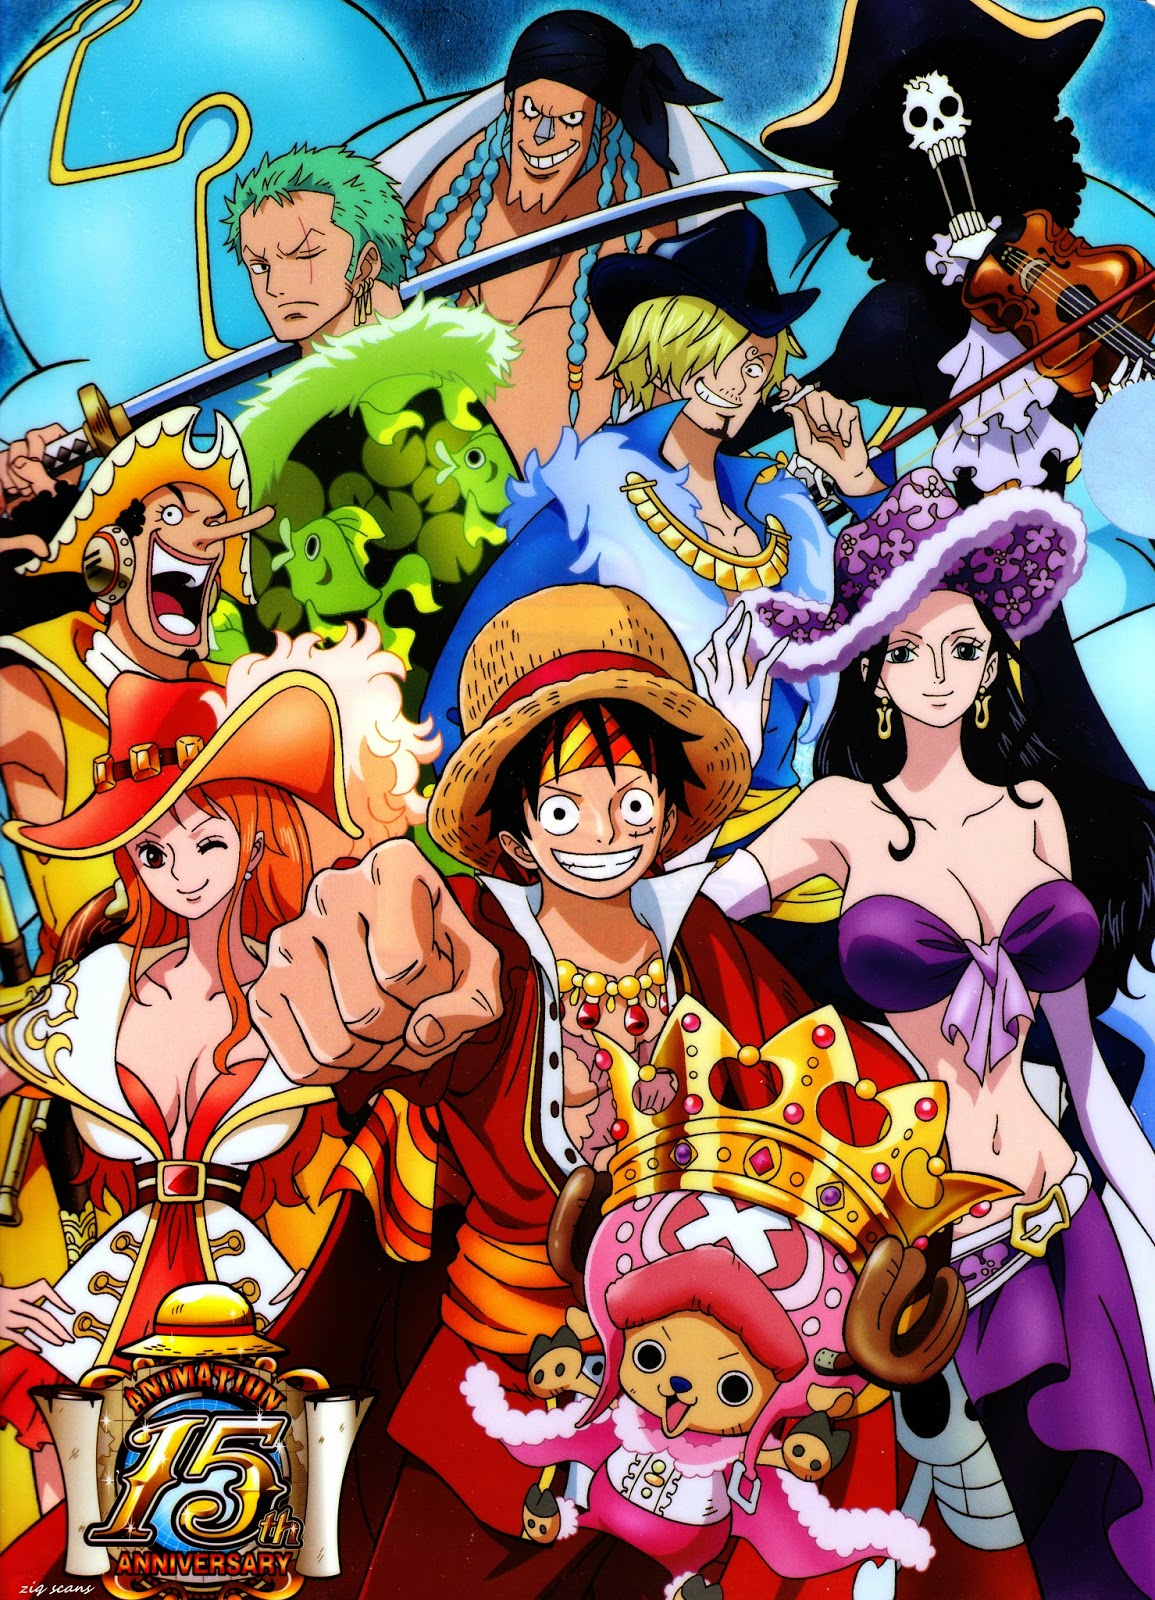 ดู One Piece พากย์ไทย ชัด HD: One piece วันพีช ฤดูกาลที่ 1 อิสท์บลู  พากย์ไทย HD